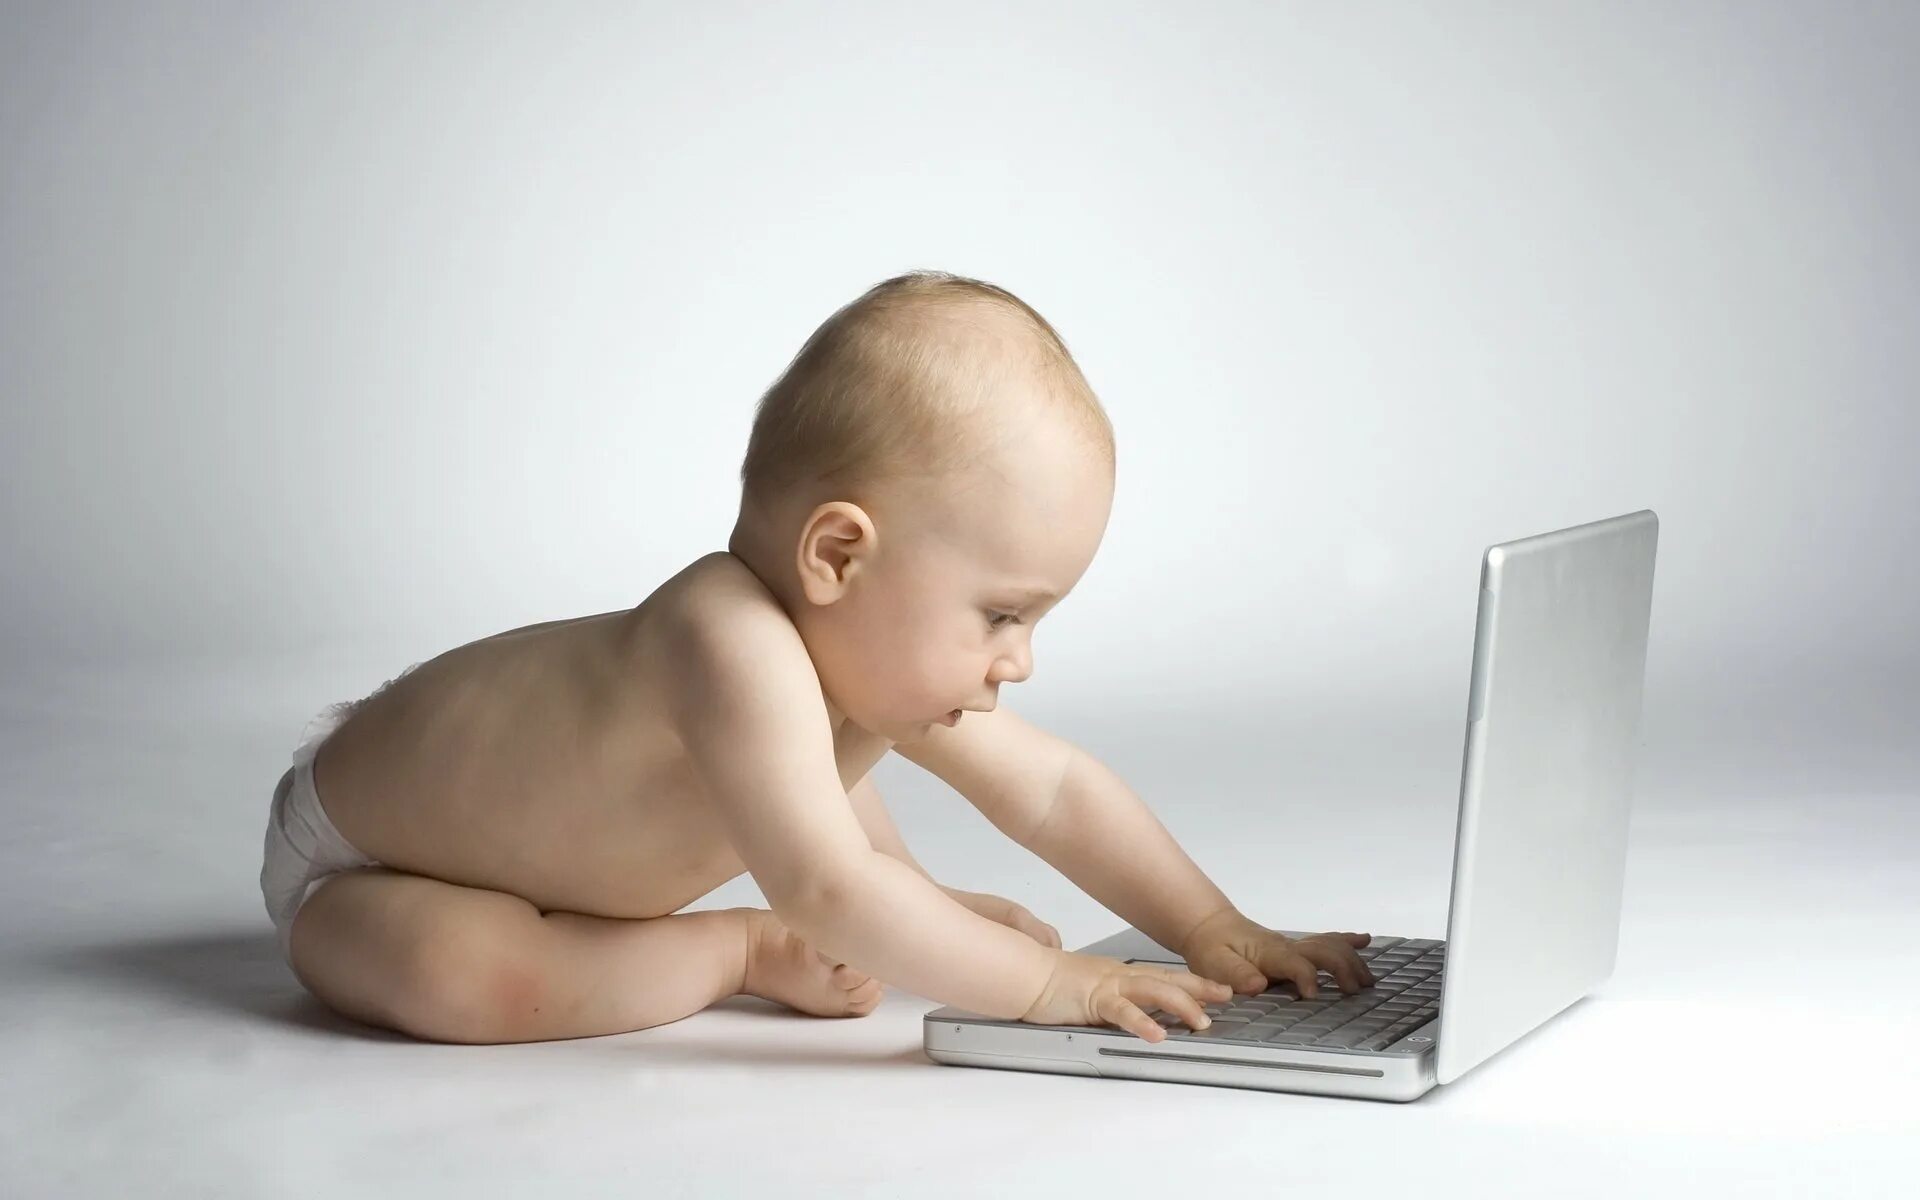 Статья о детях видео. Компьютер для детей. Маленький компьютер для детей. Младенец с компьютером. Маленький ребенок за компьютером.